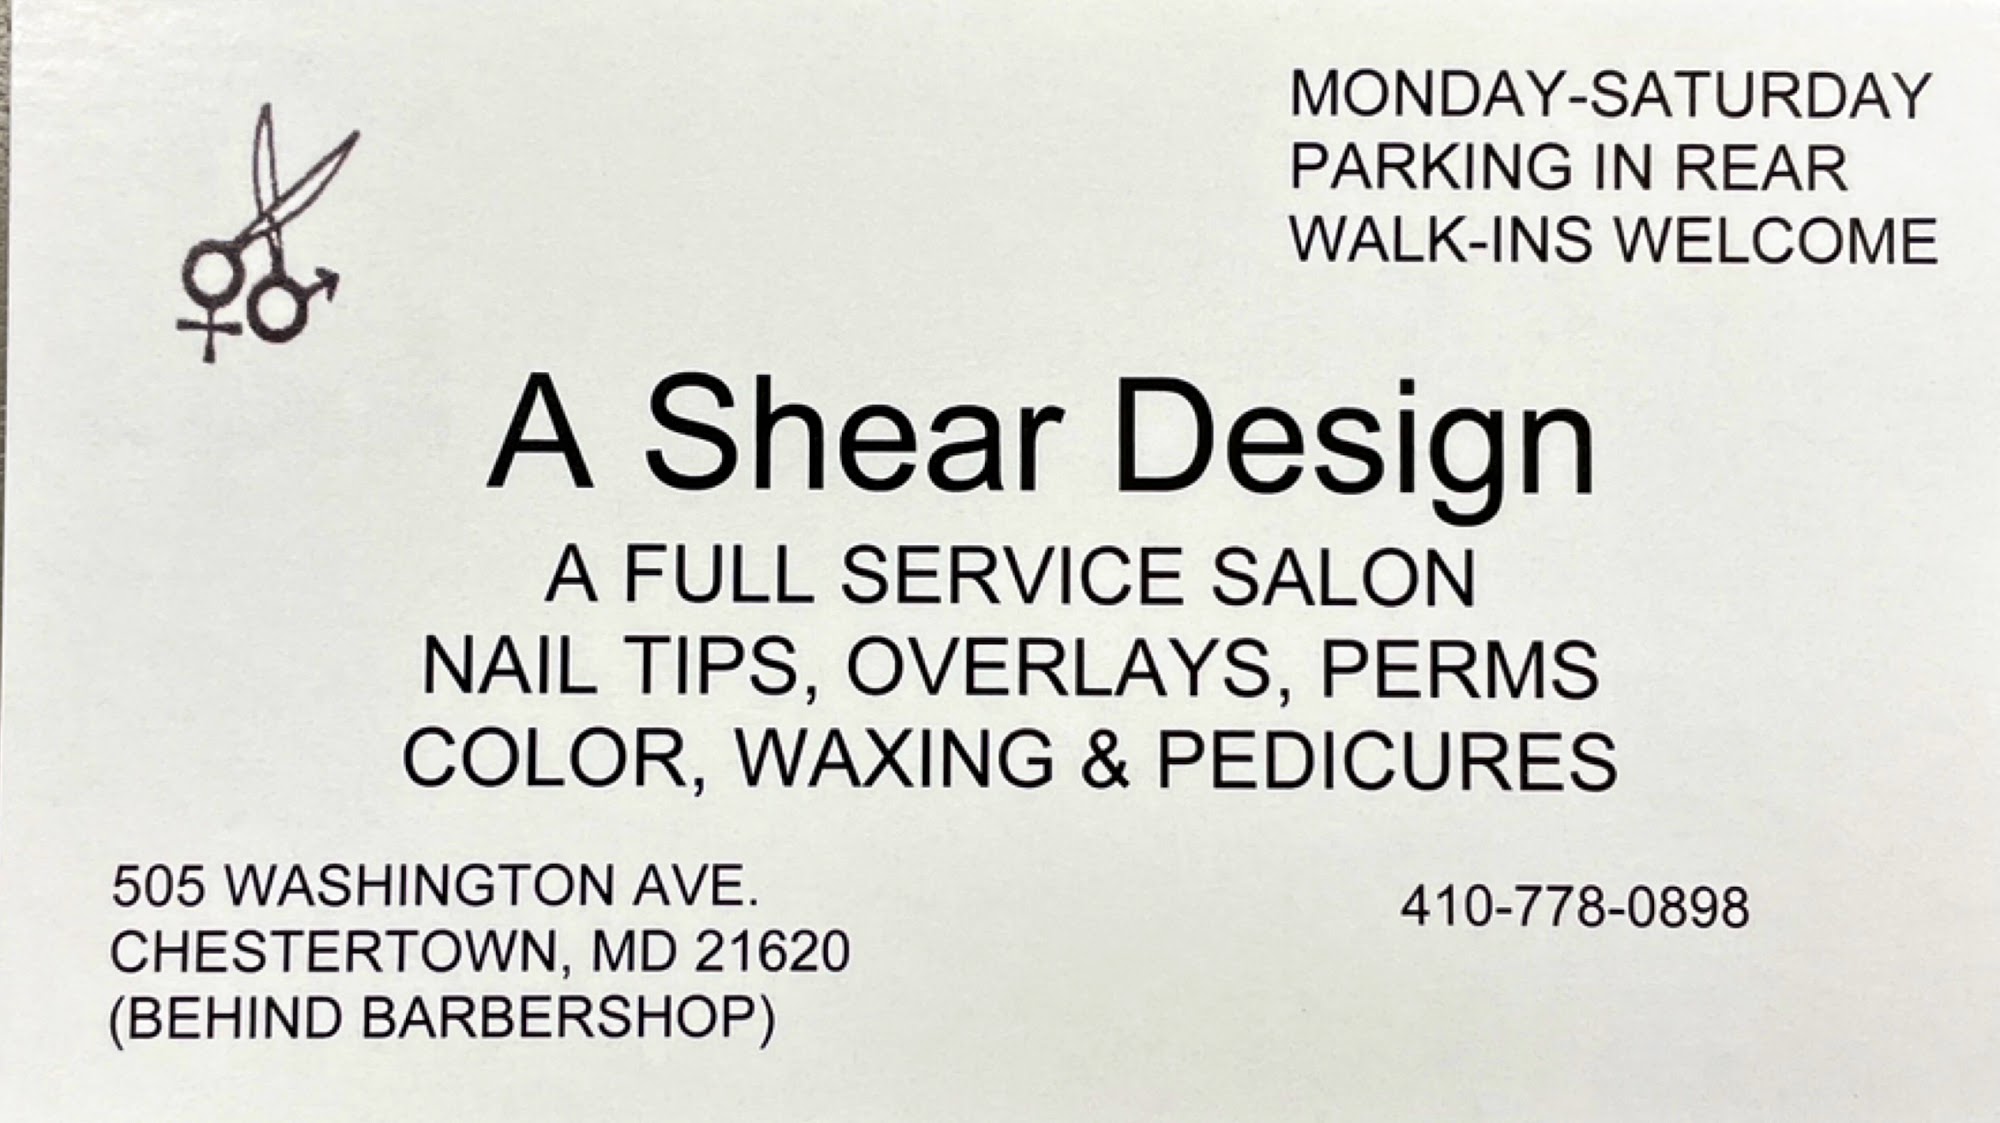 A Shear Design 505 Washington Ave, Chestertown Maryland 21620